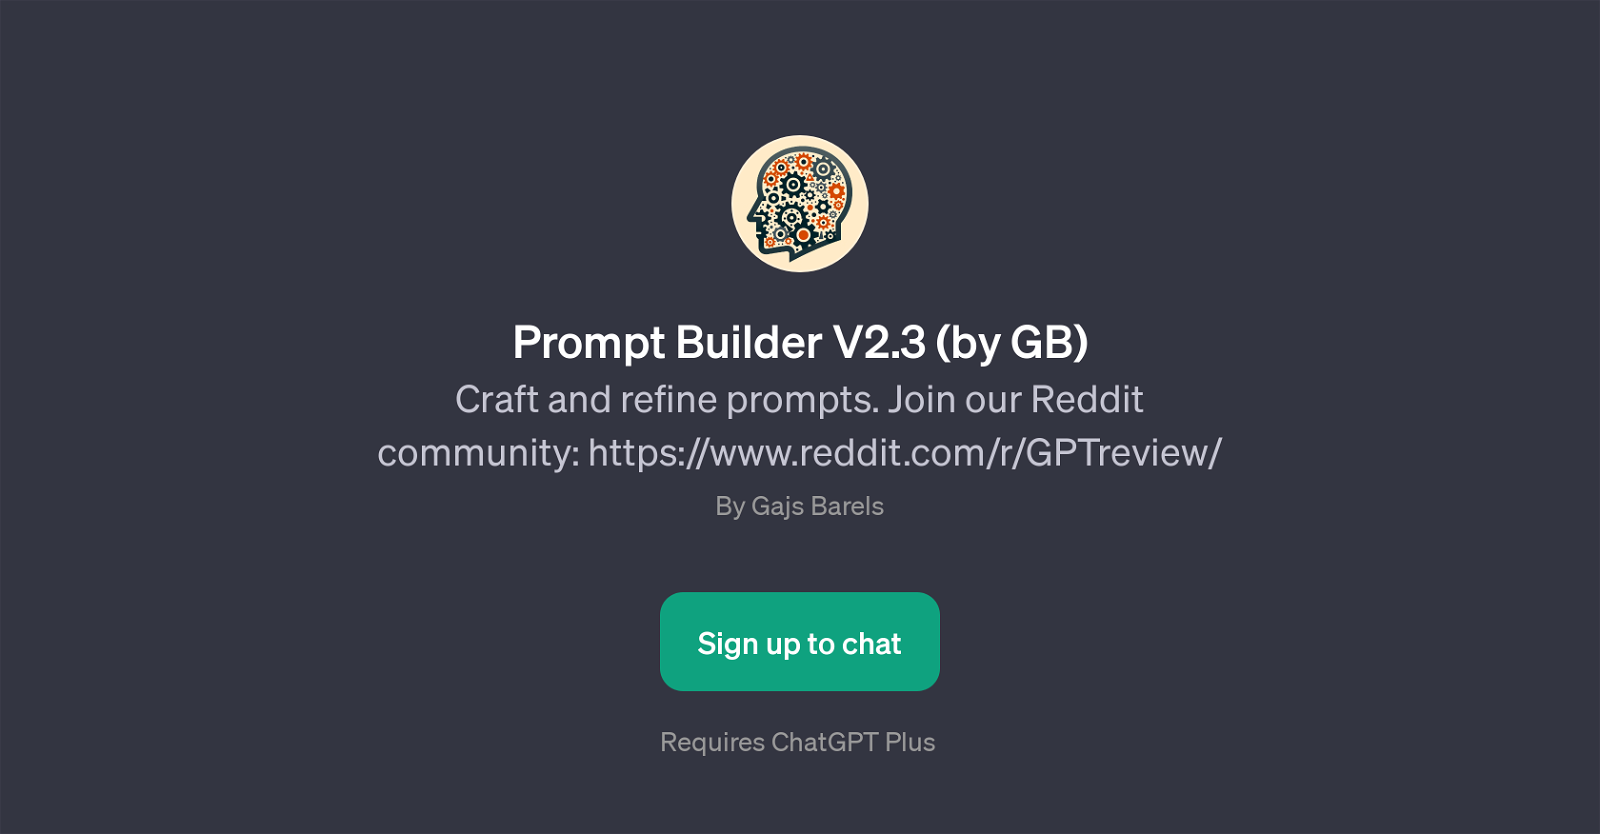 Prompt Builder V2.3 (by GB) website